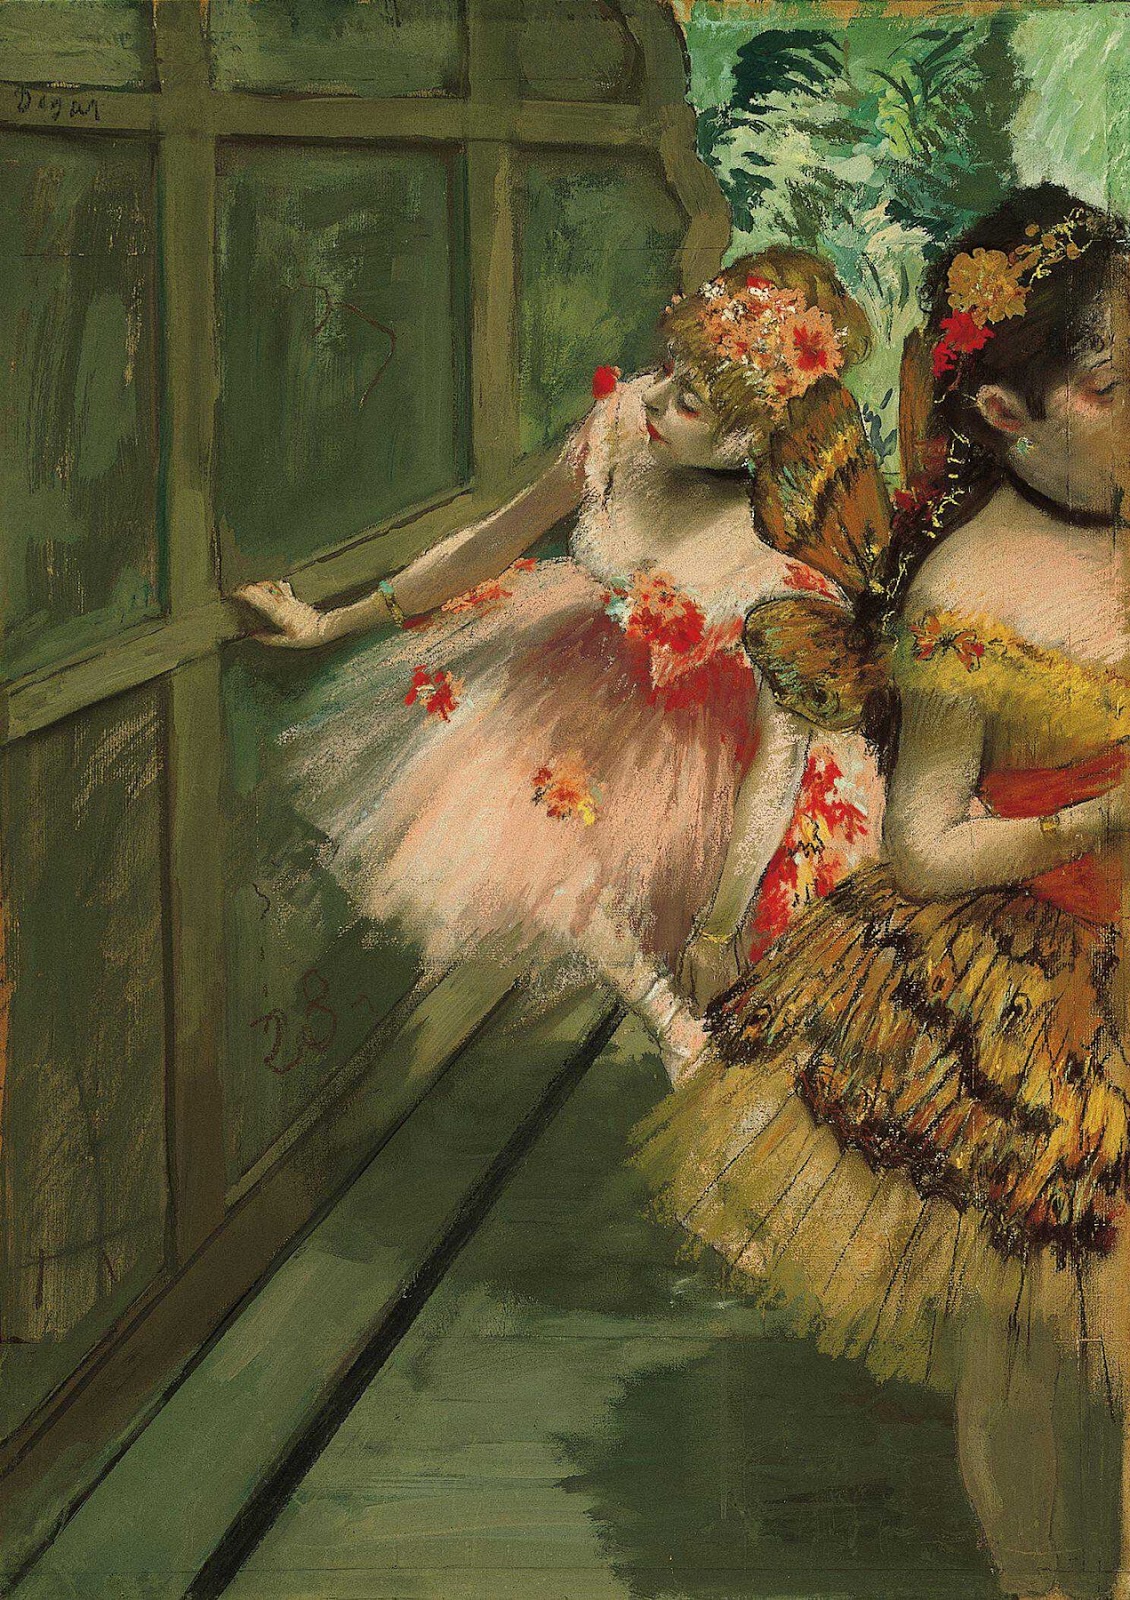 Danseurs dans les ailes by Edgar Degas - c. 1876-1878 